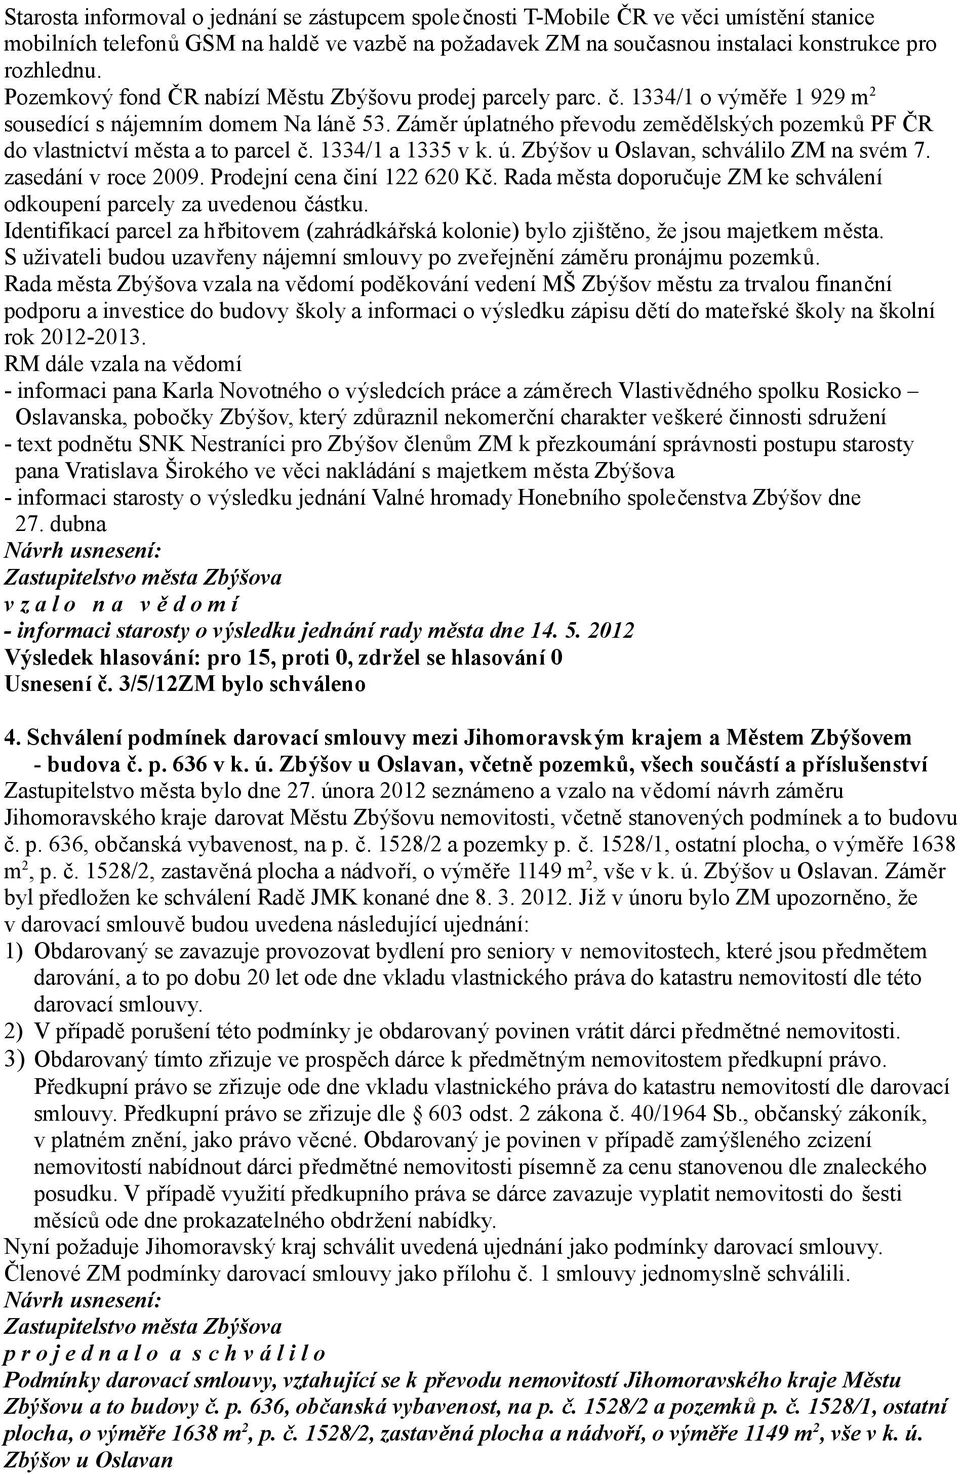 Záměr úplatného převodu zemědělských pozemků PF ČR do vlastnictví města a to parcel č. 1334/1 a 1335 v k. ú. Zbýšov u Oslavan, schválilo ZM na svém 7. zasedání v roce 2009.